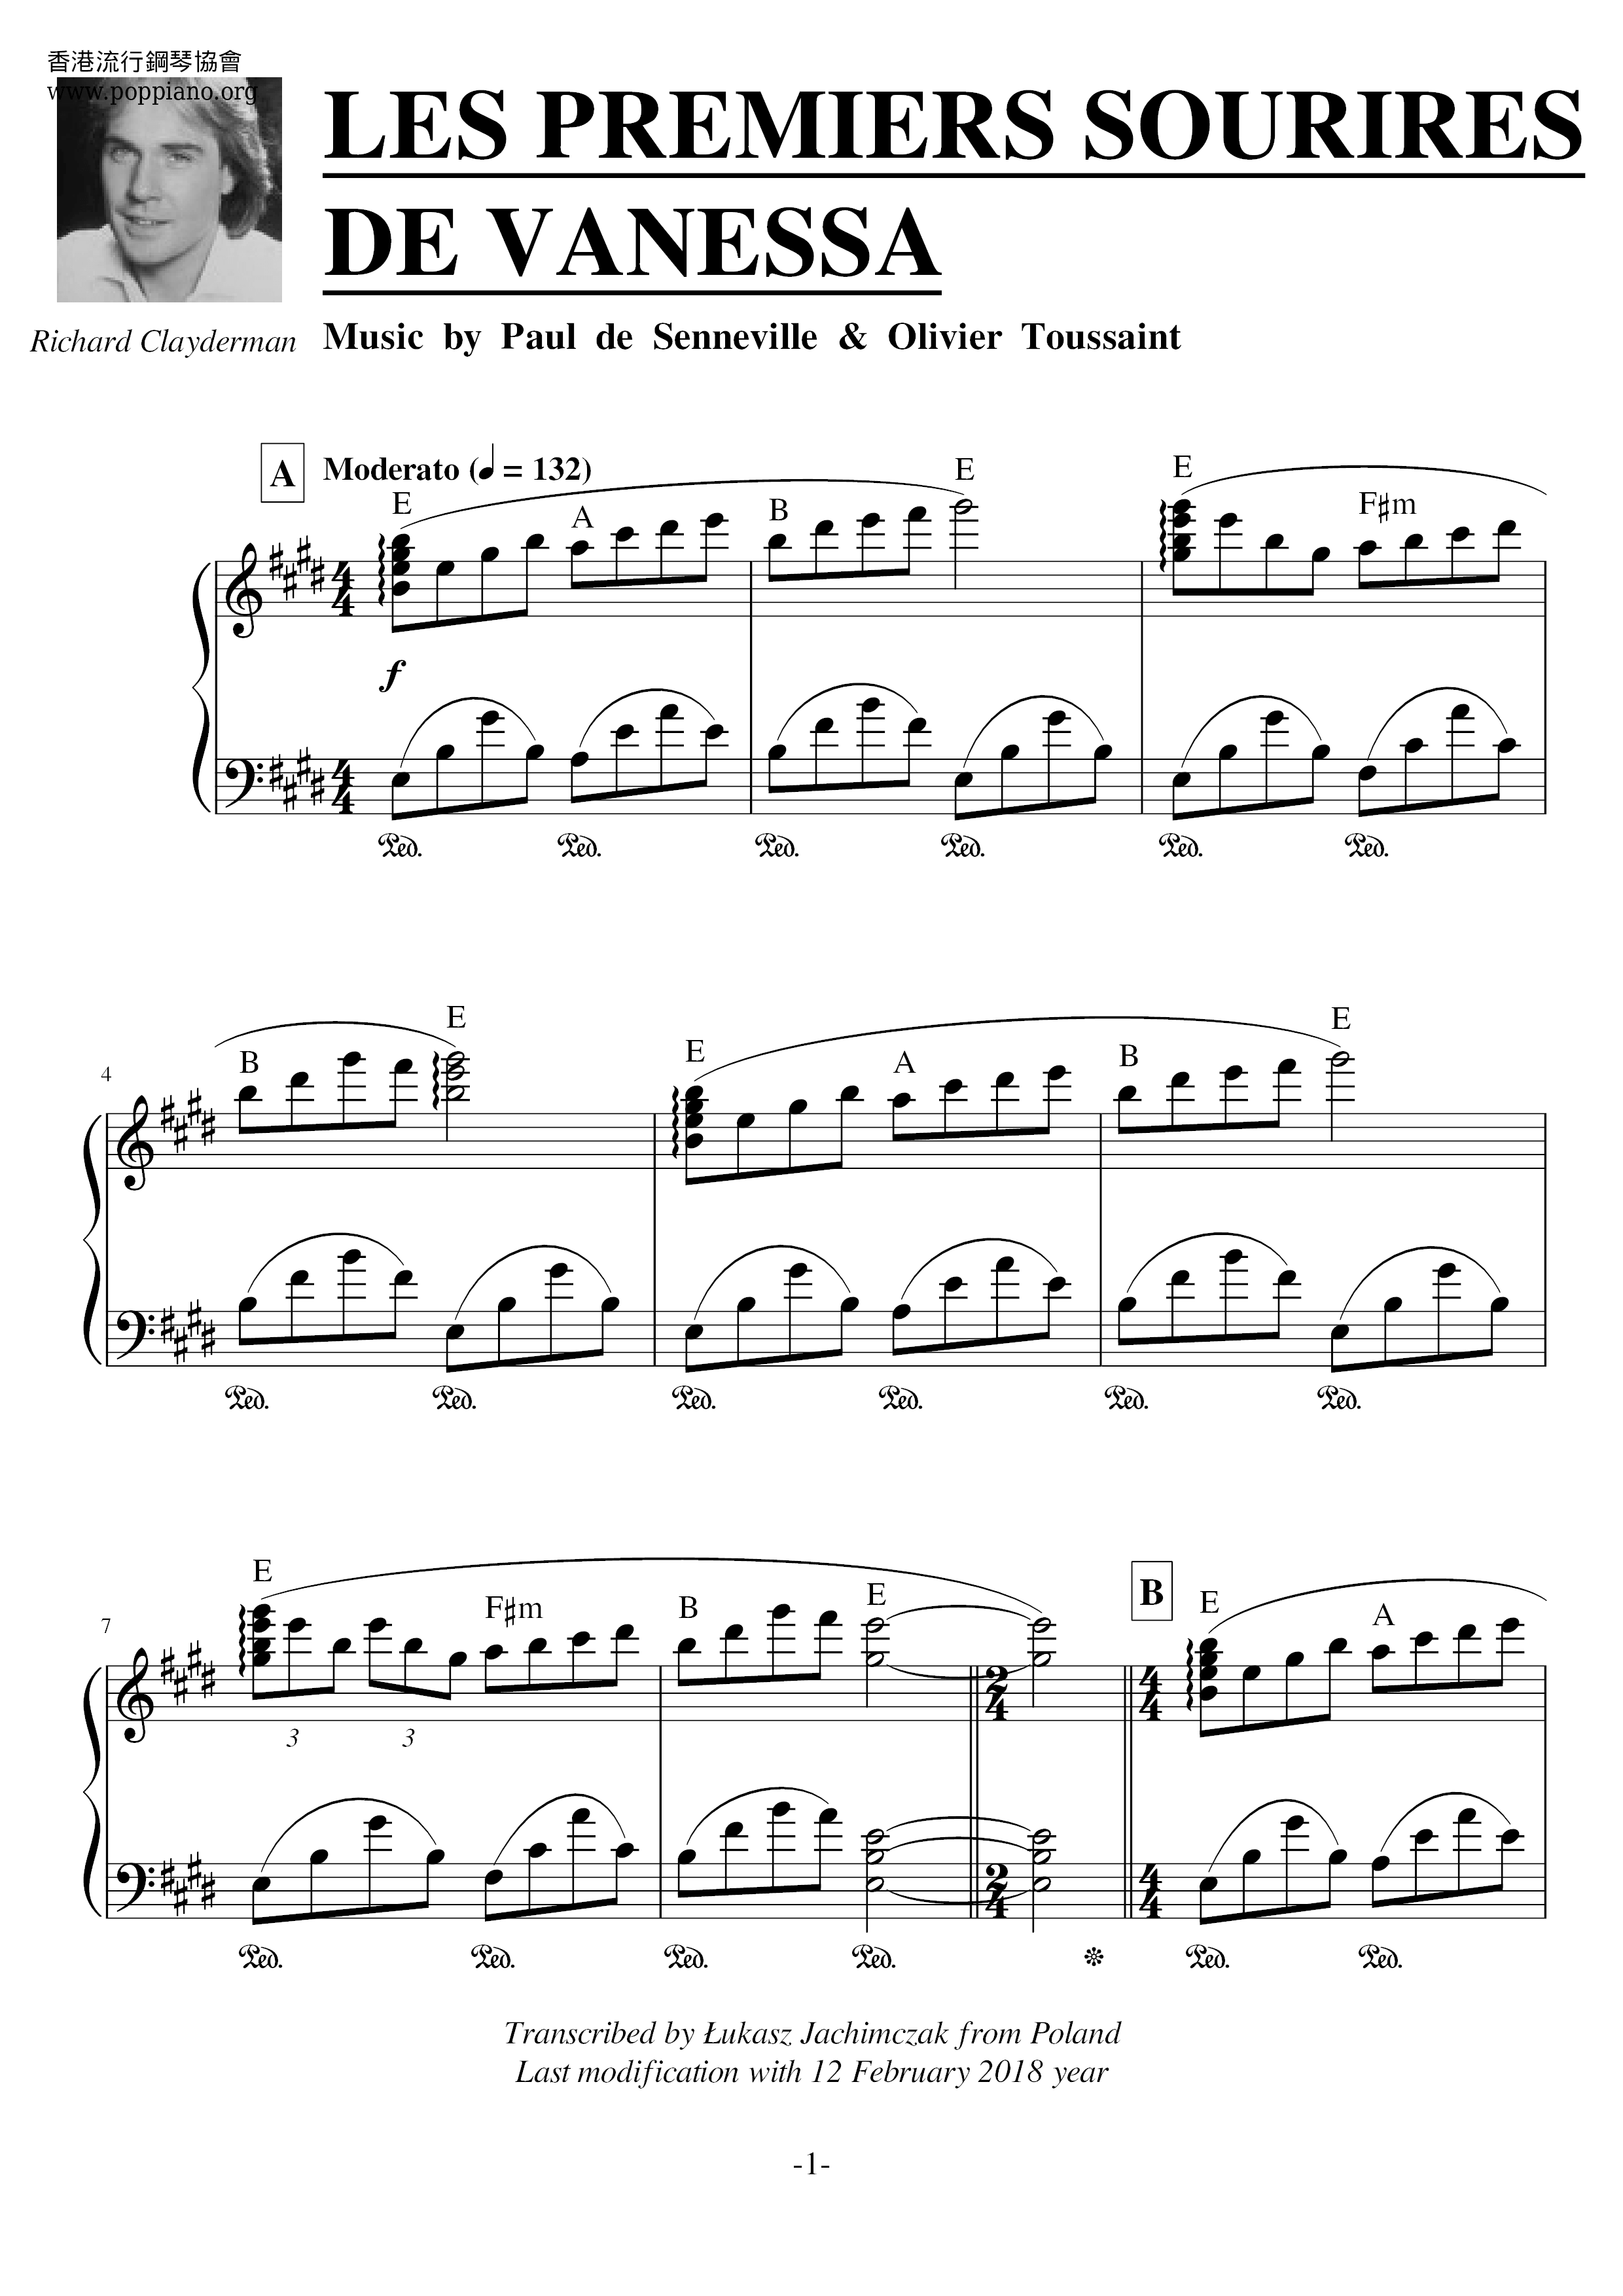 Les Premiers Sourires De Vanessaピアノ譜